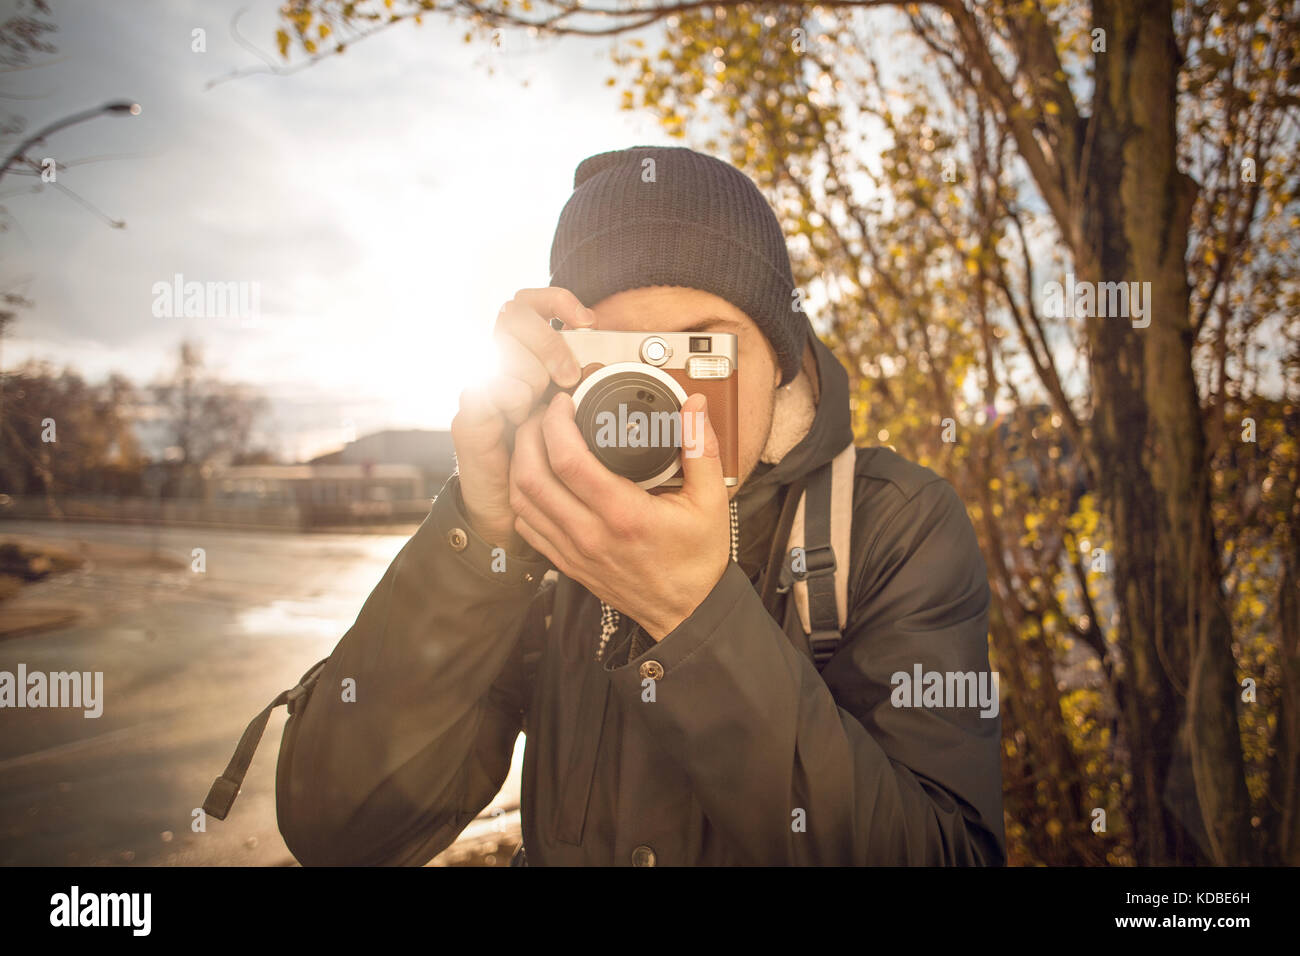 Jeune homme de prendre une photo avec appareil photo instantané Banque D'Images